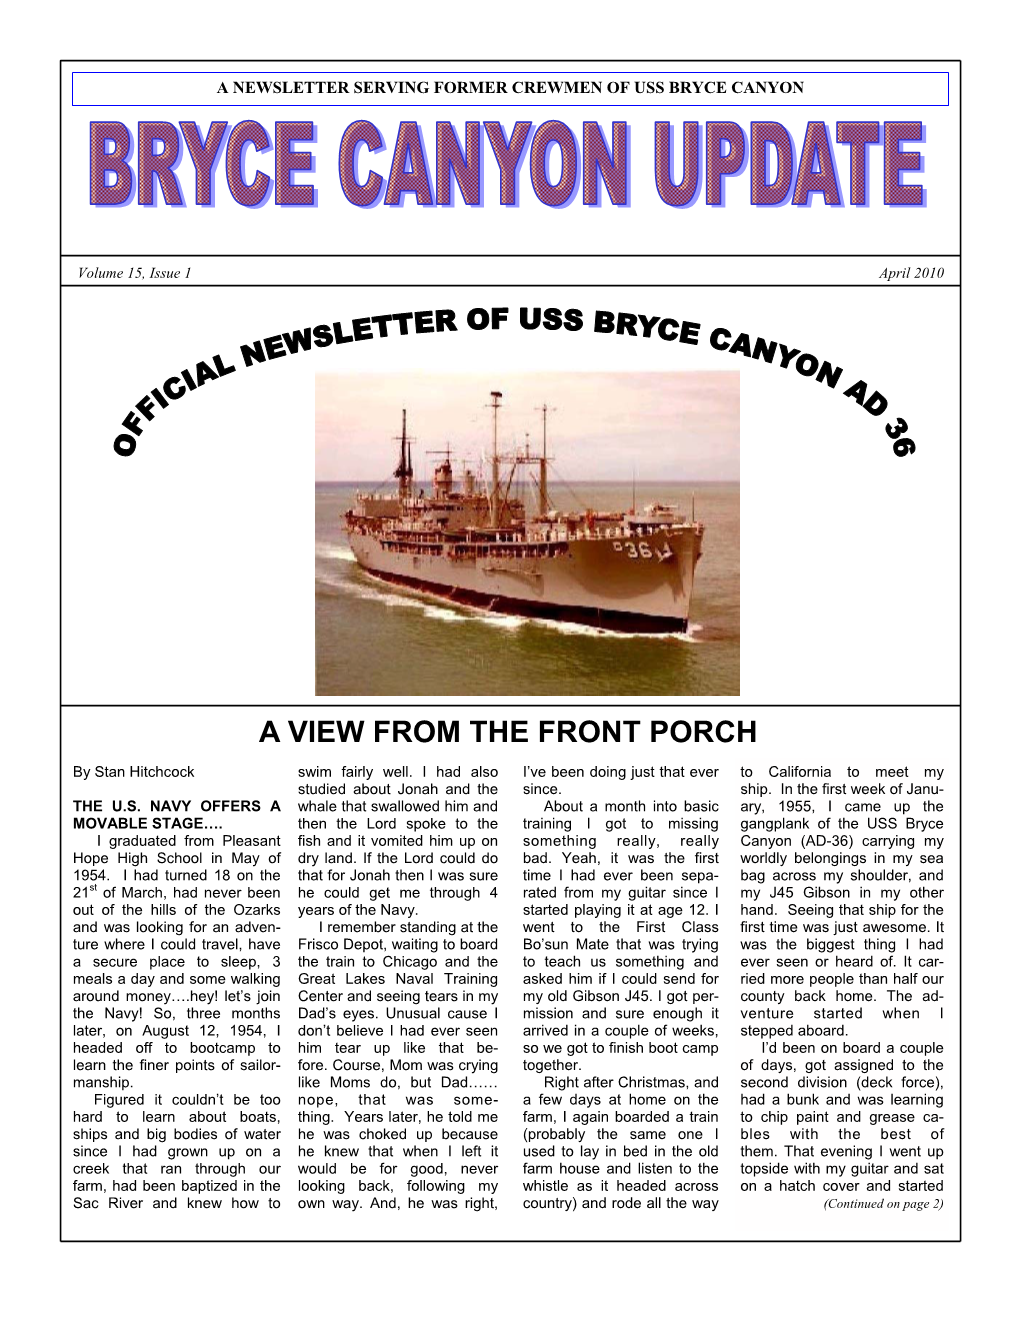 BRYCE CANYON UPDATE Newslettera